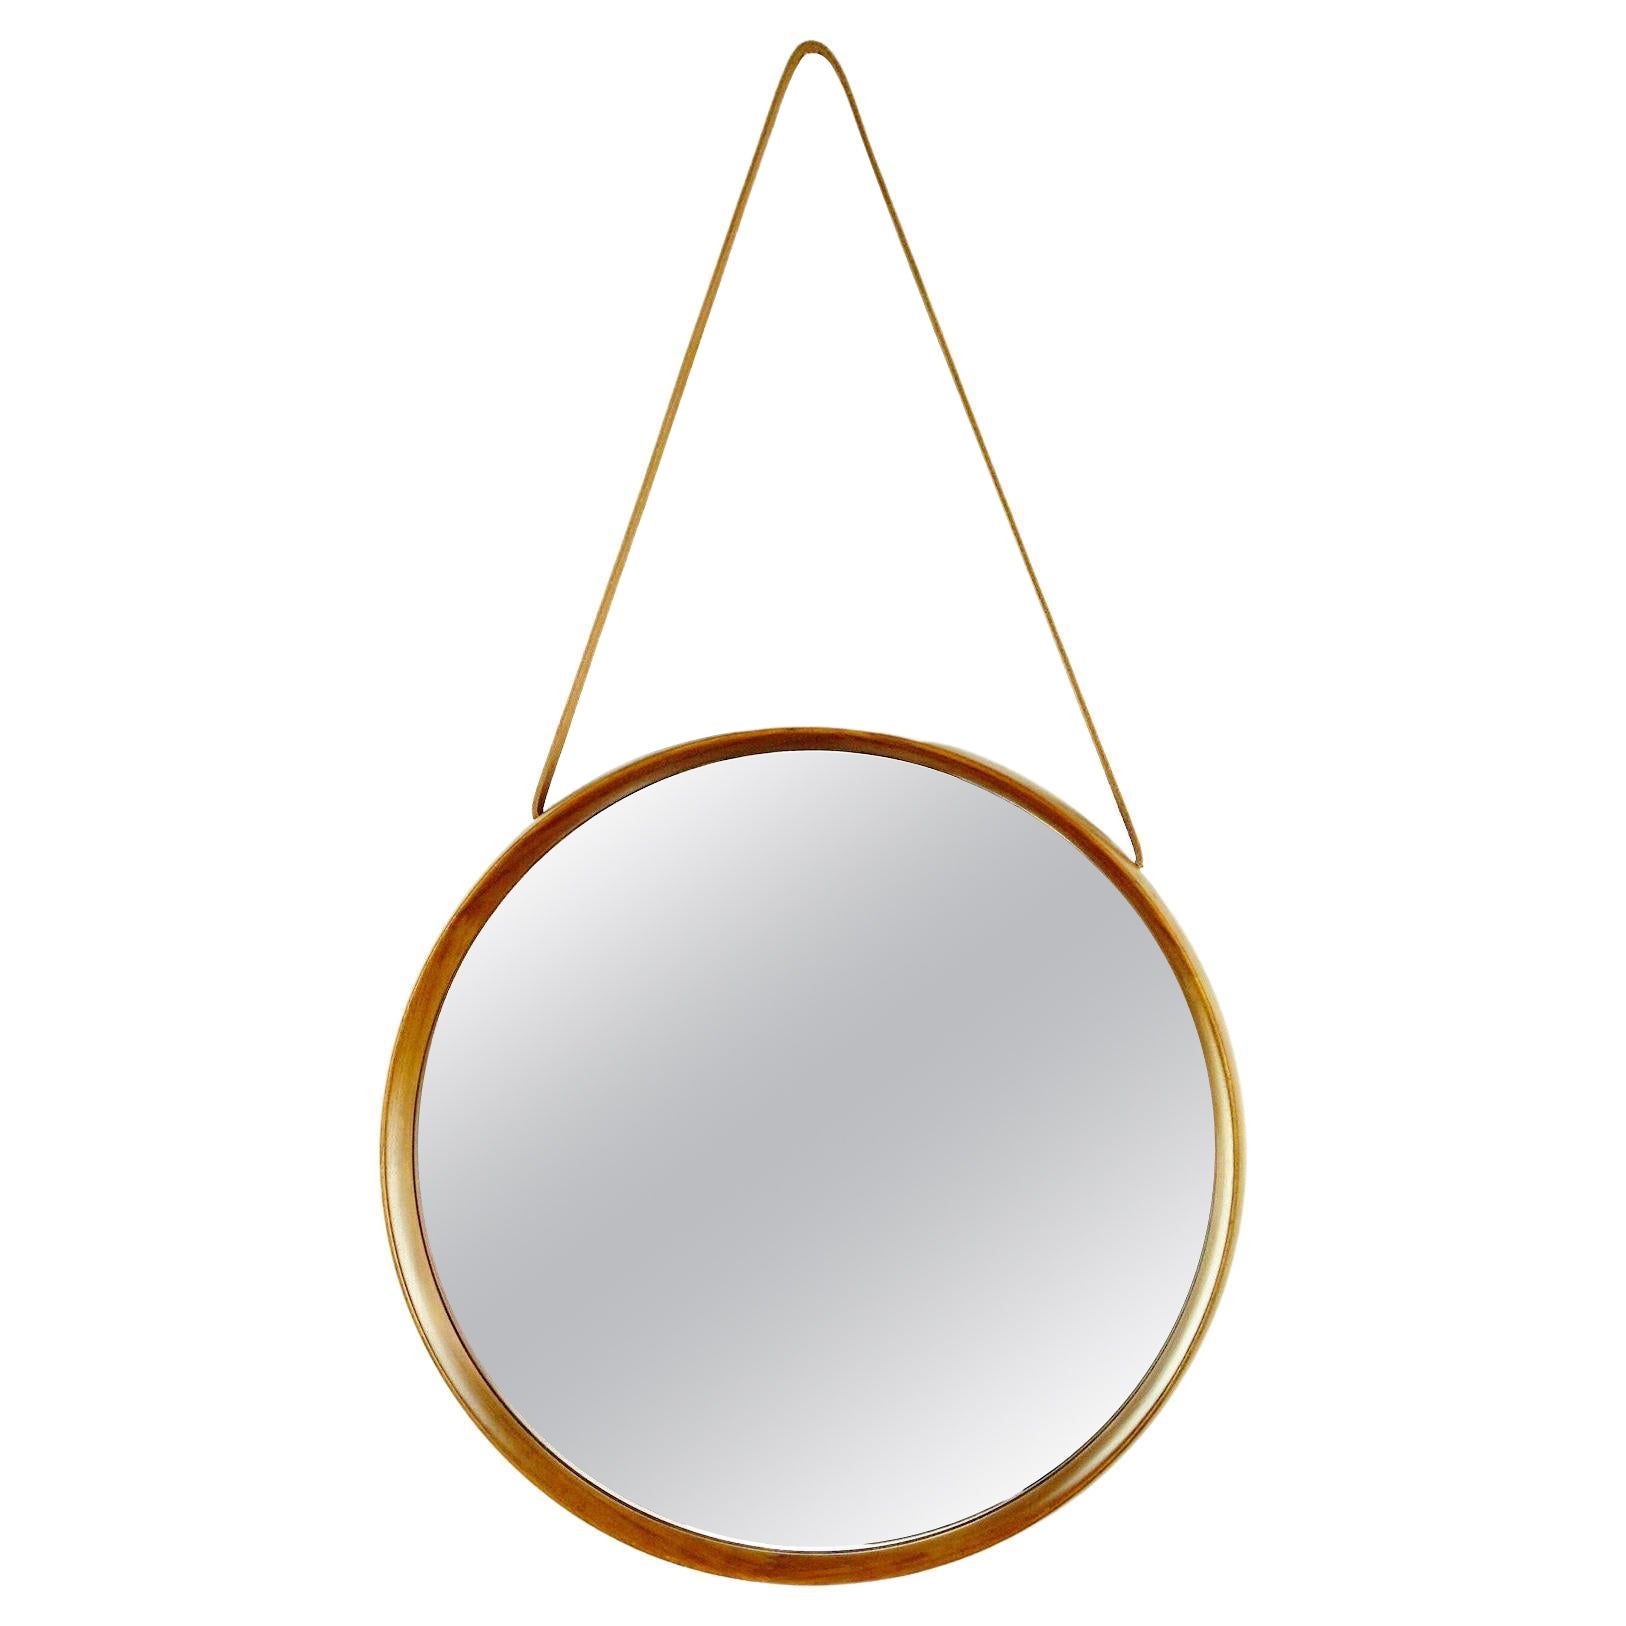 Scandinavian Teak Mirror by Uno and Osten Kristiansson for Luxus Vittsjö Sweden